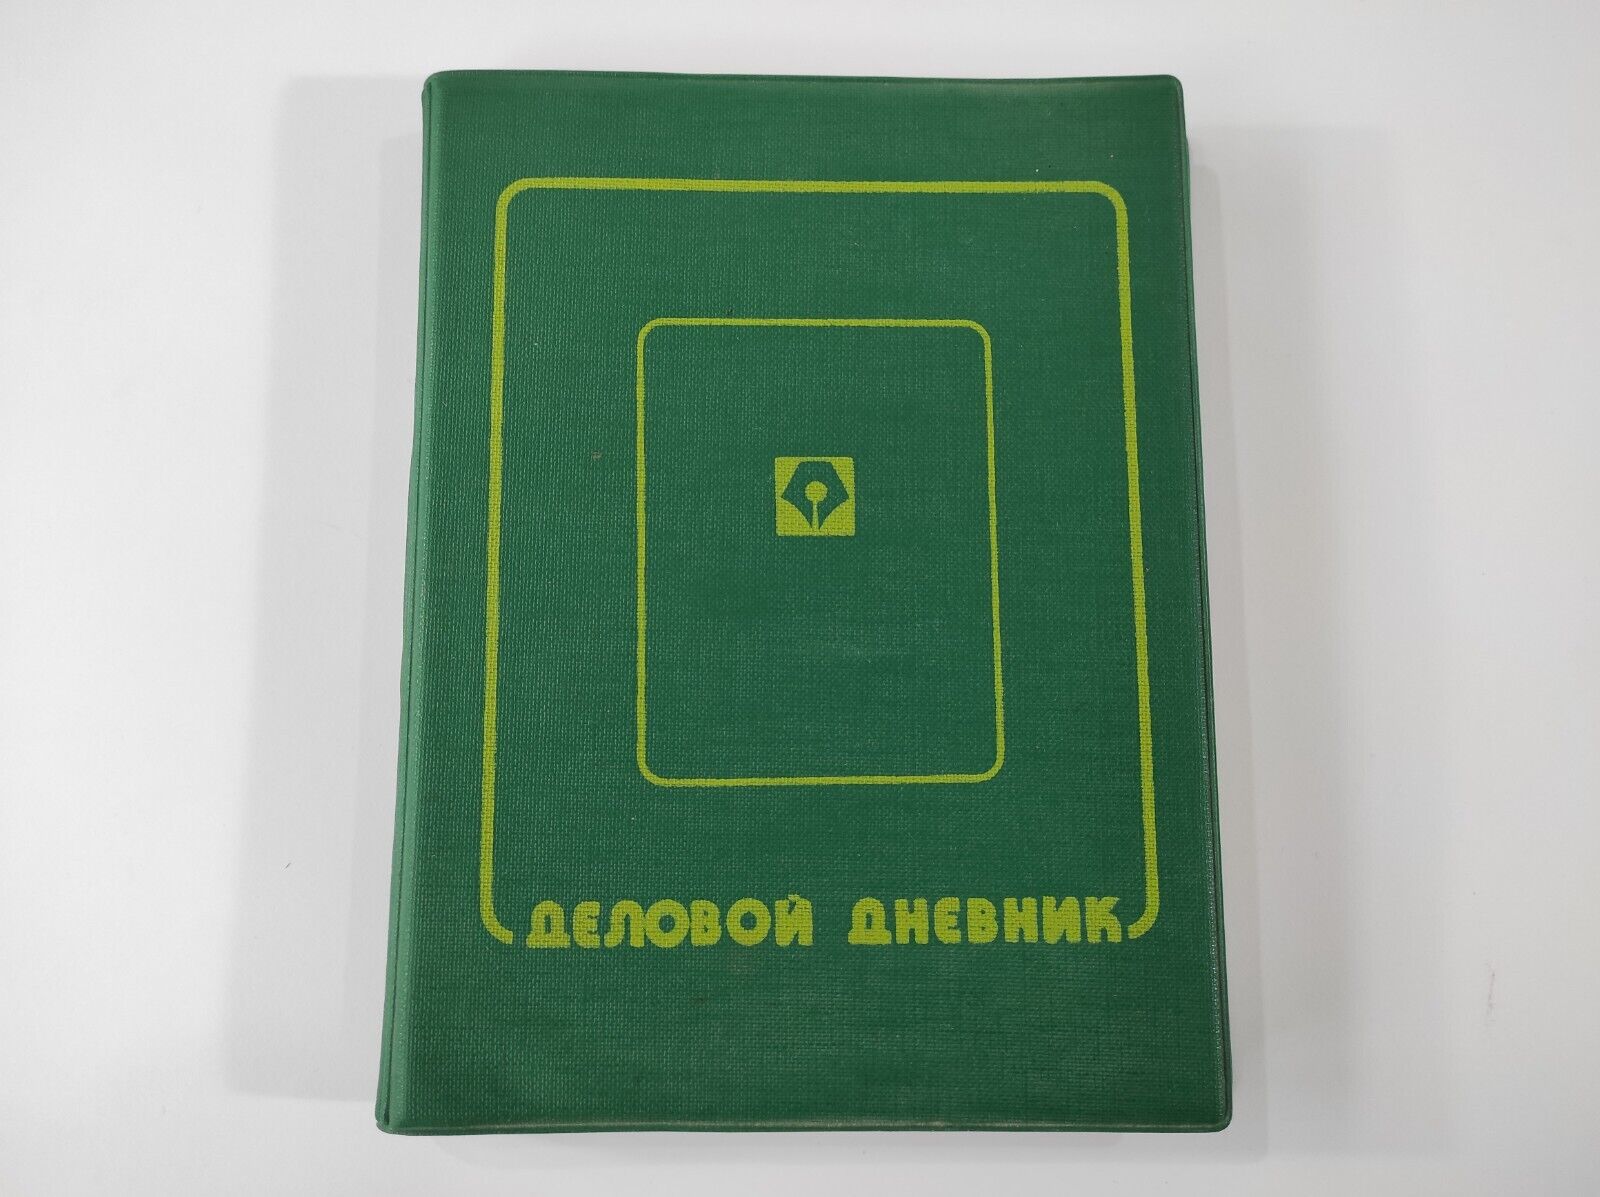 Soviet vintage unused day book